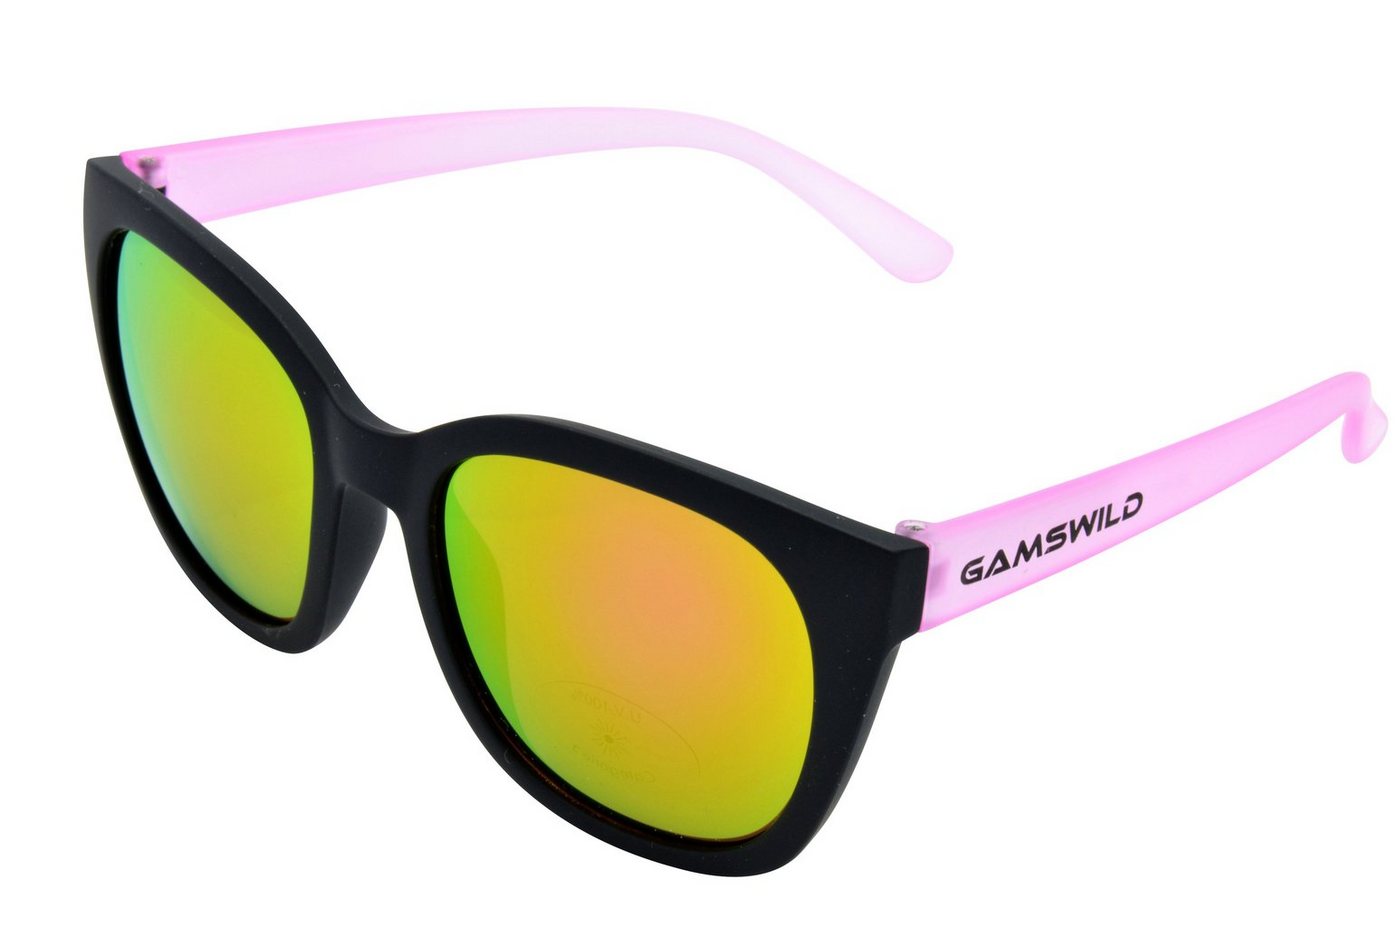 Gamswild Sonnenbrille UV400 GAMSKIDS Jugendbrille 8-18 Jahre Kinderbrille Mädchen Damen kids Modell WJ7517 in blau, pink, grau, halbtransparenter Rahmen von Gamswild